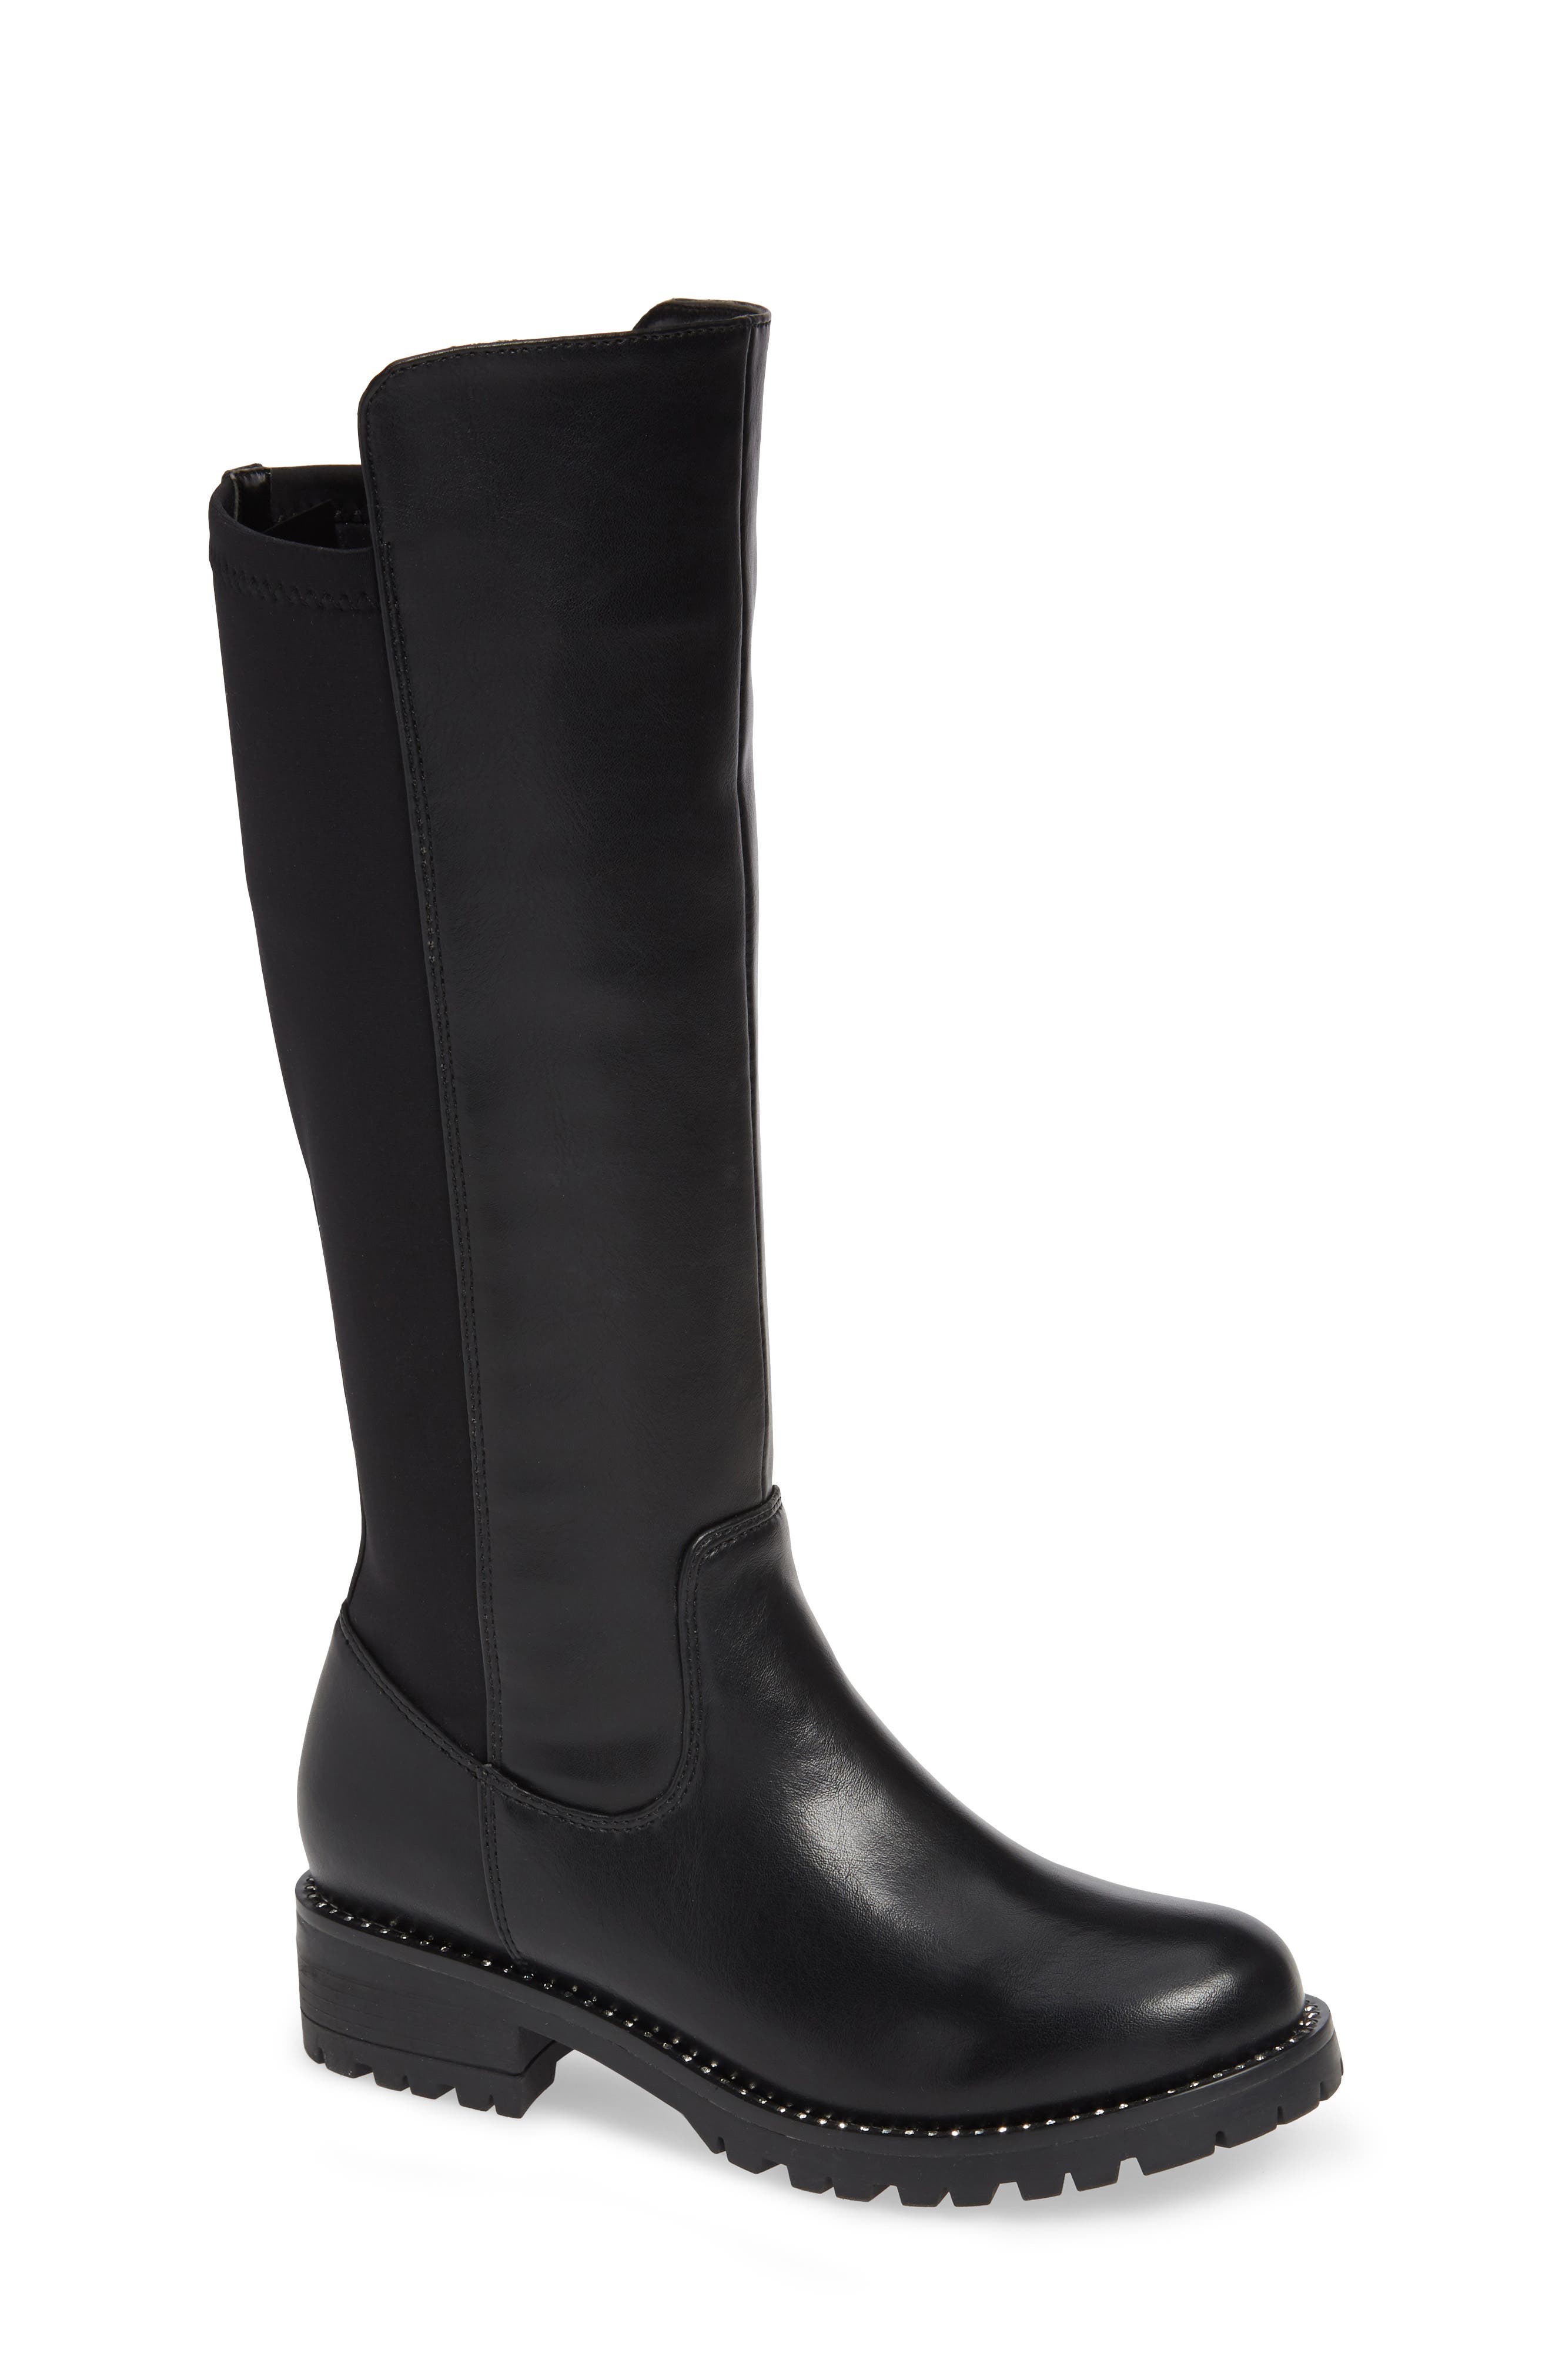 steve madden boots waterproof